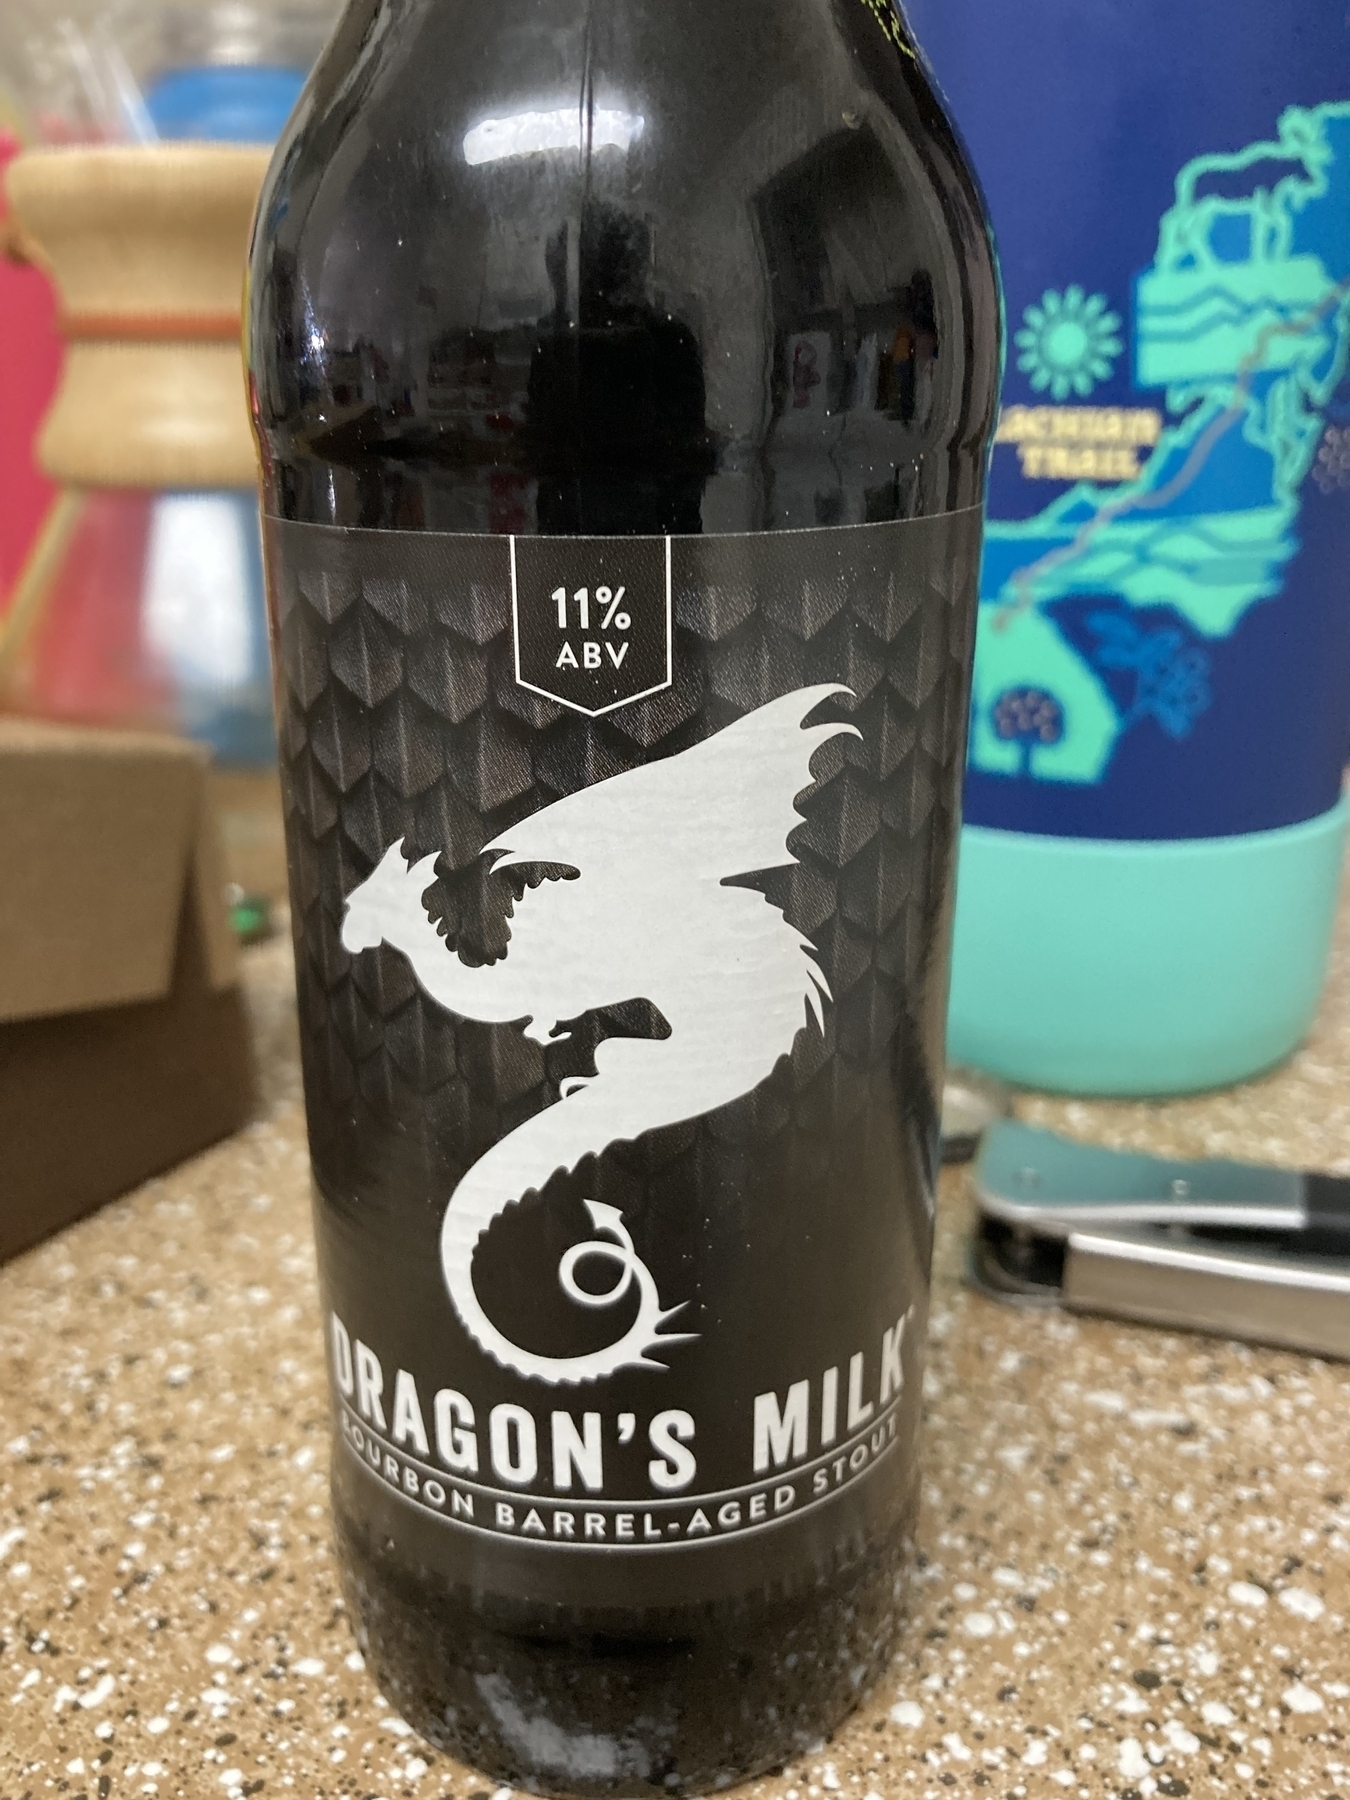 Dragon’s milk beer